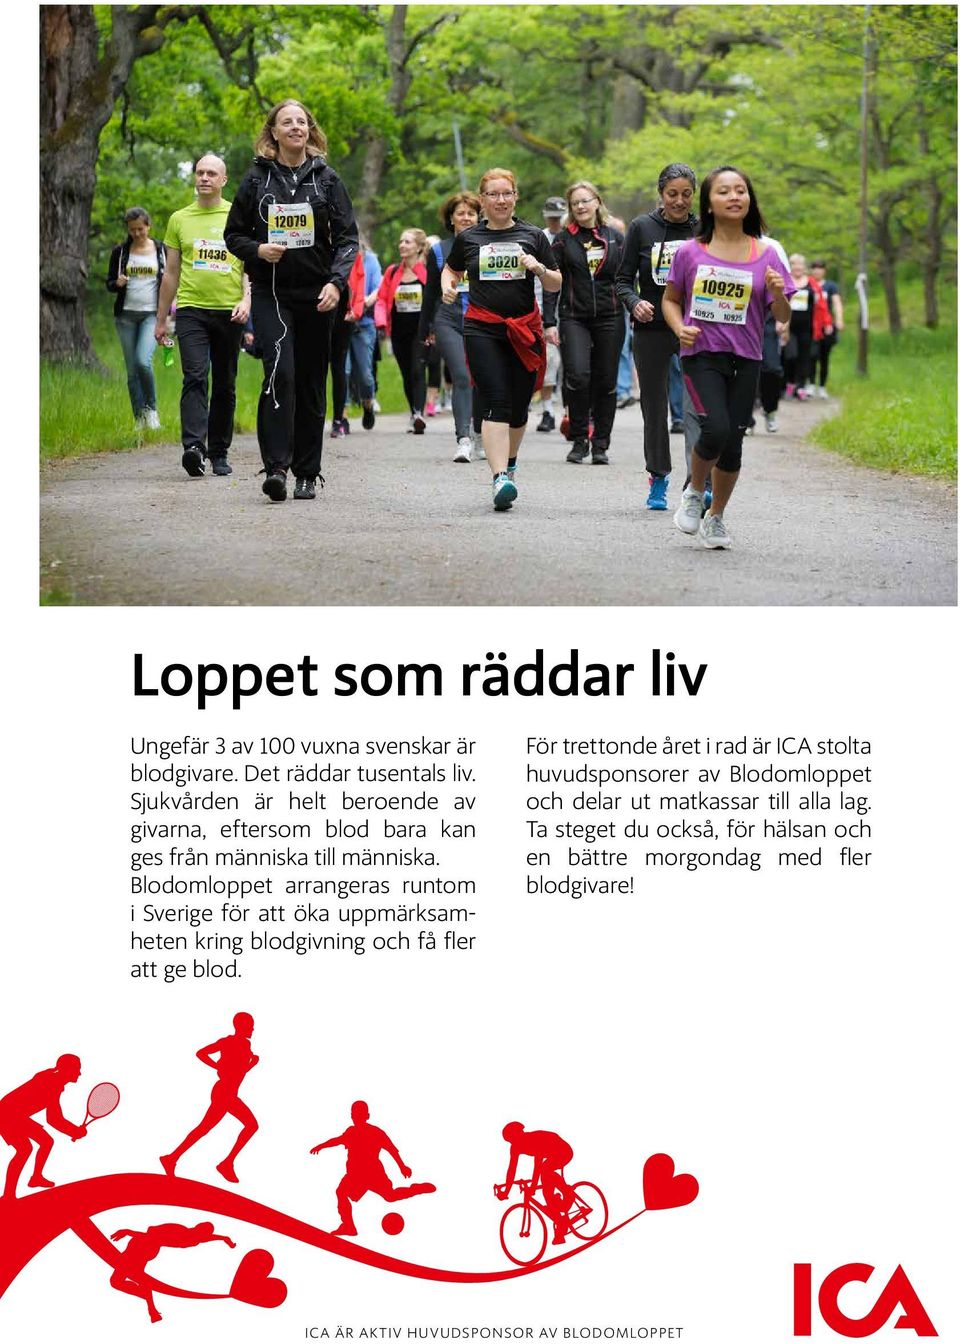 Blodomloppet arrangeras runtom i Sverige för att öka uppmärksamheten kring blodgivning och få fler att ge blod.